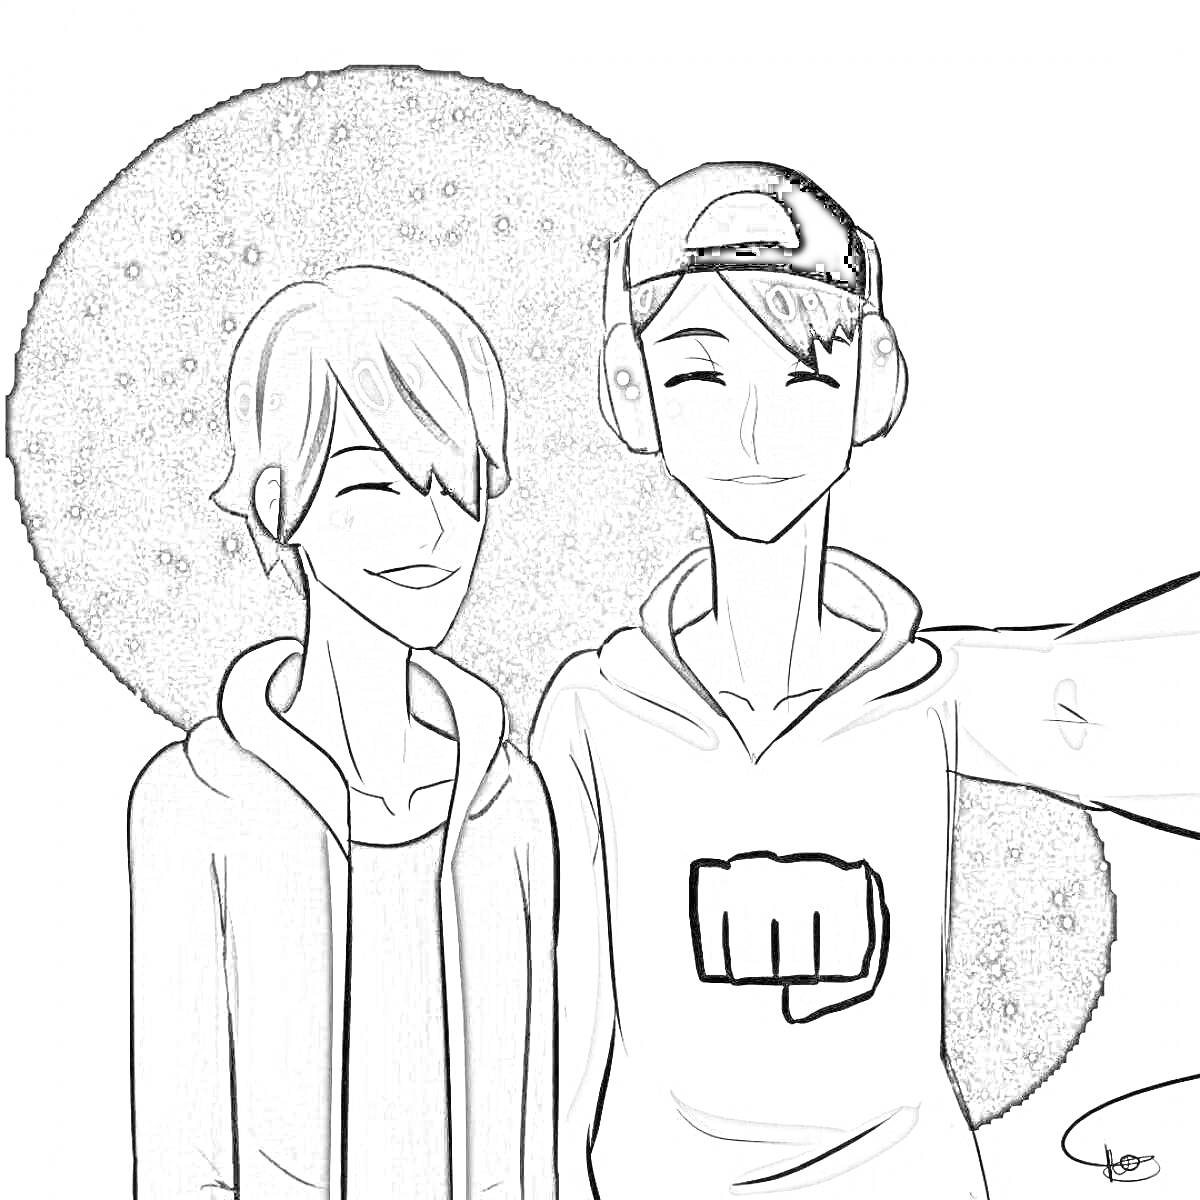 Раскраска Два персонажа в наушниках и толстовках на фоне звездного неба, селфи двоих друзей